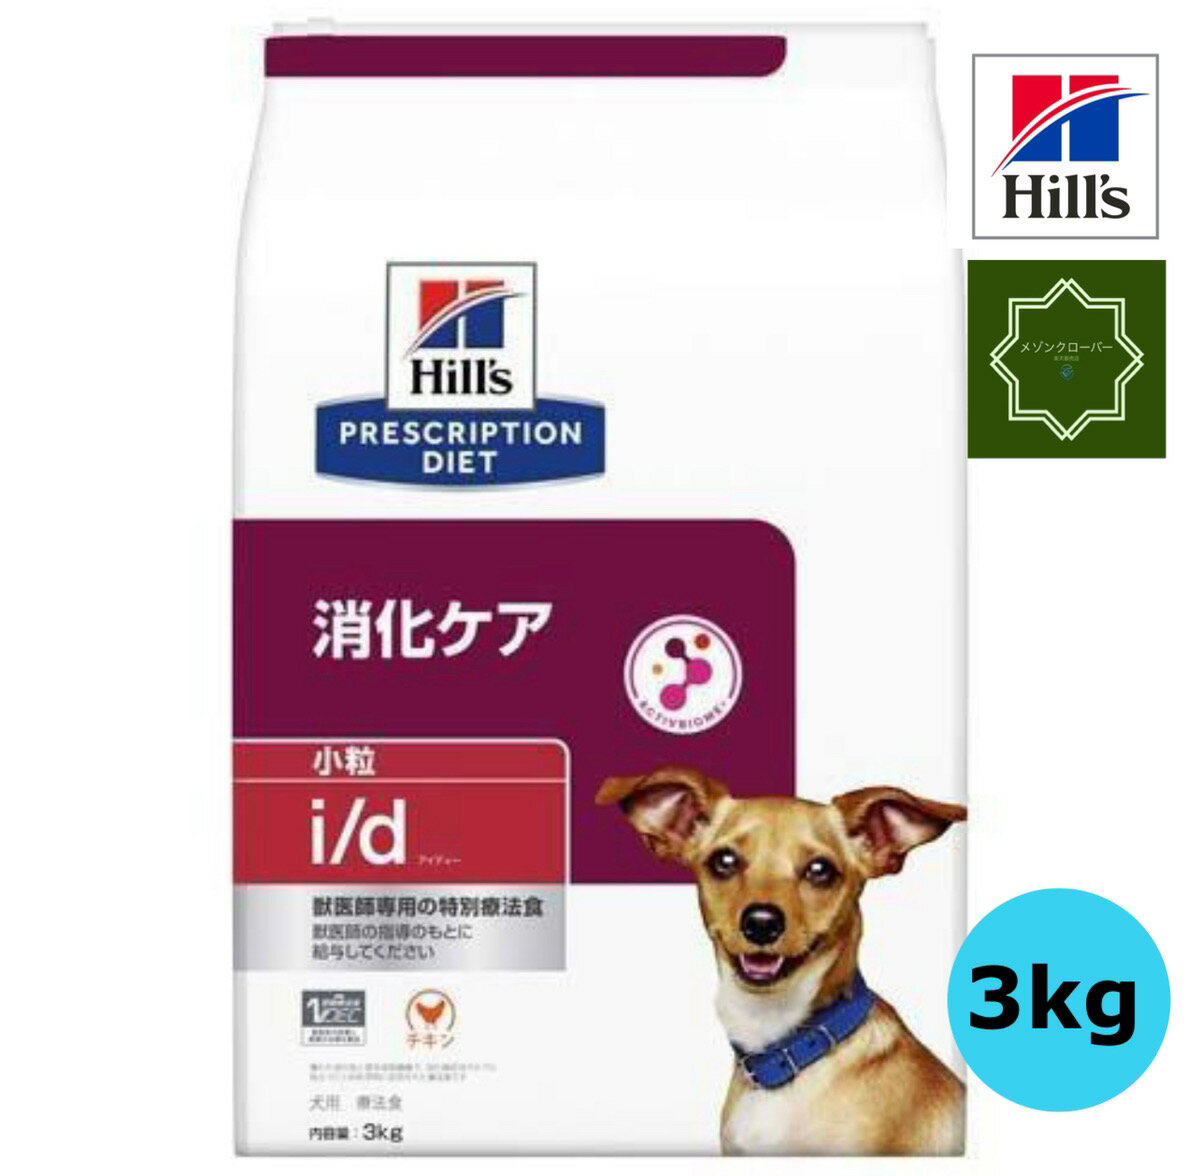 ヒルズ 特別療法食 犬用 i/d アイディー 消化ケア ドライ 小粒 3kg 【送料無料】 1